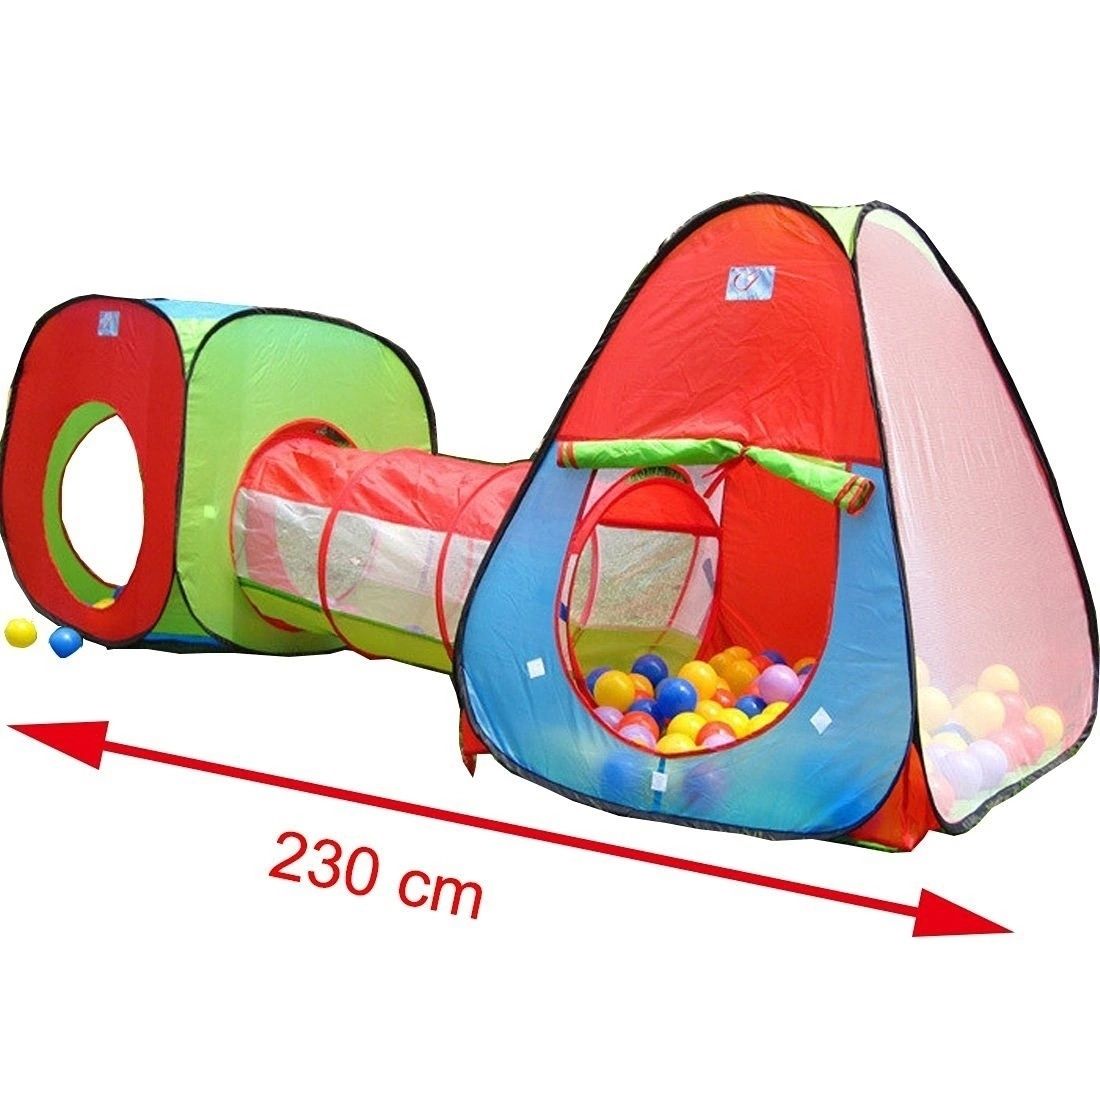 Детская игровая двойная палатка с тоннелем.